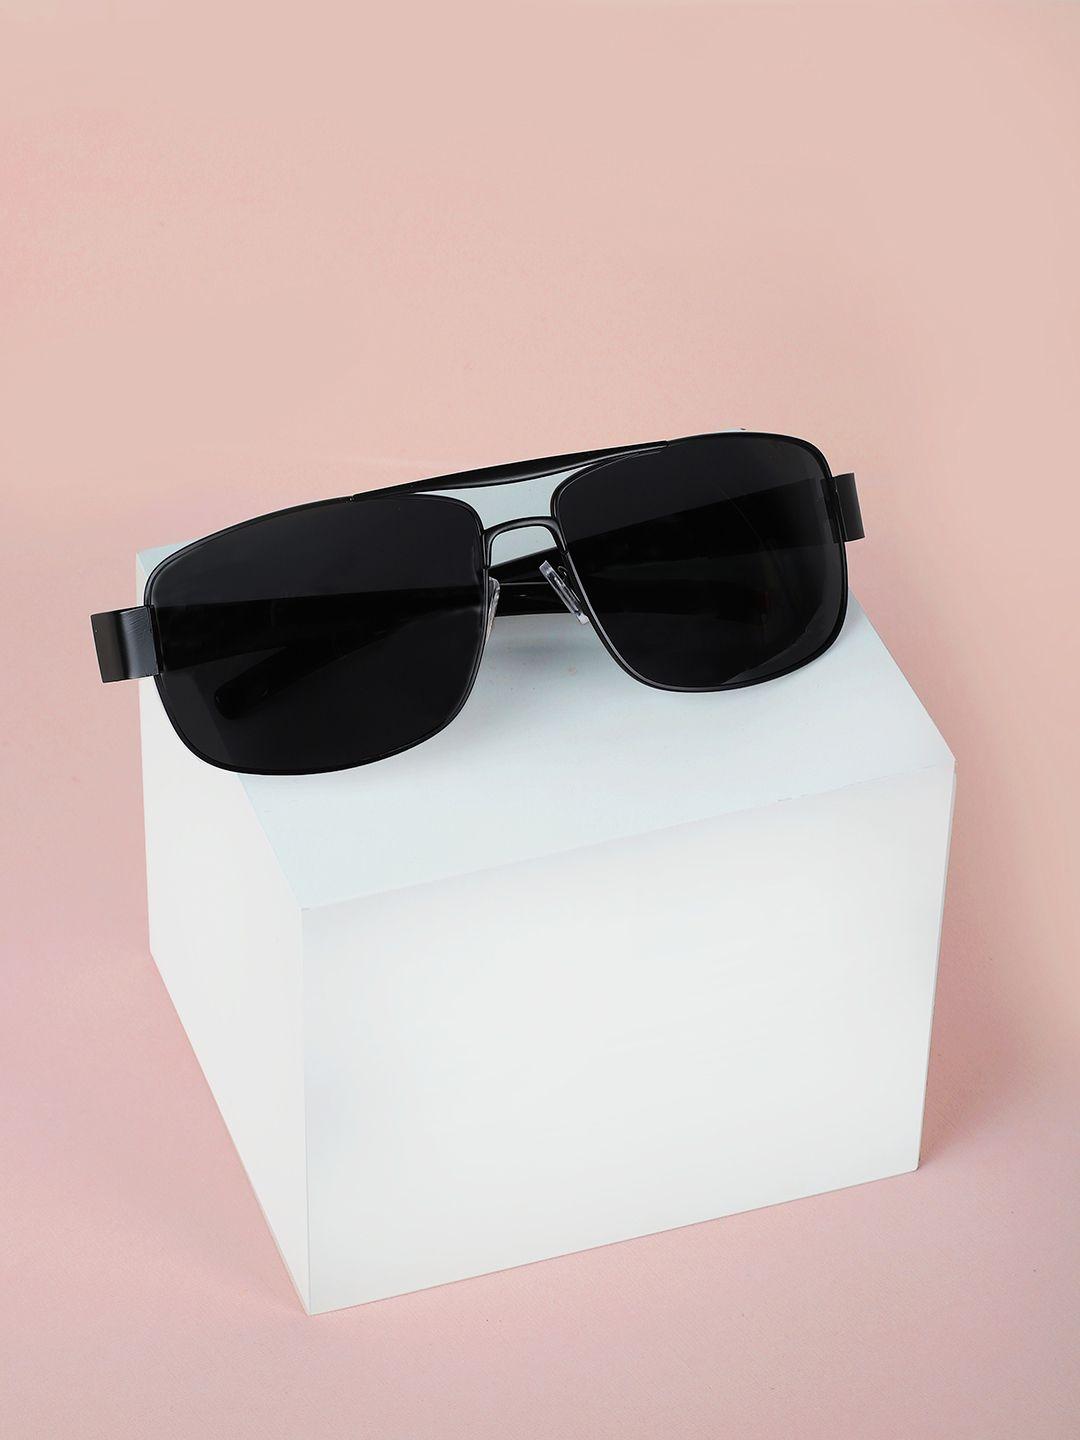 carlton-london-men-polarised-rectangle-sunglasses-611221